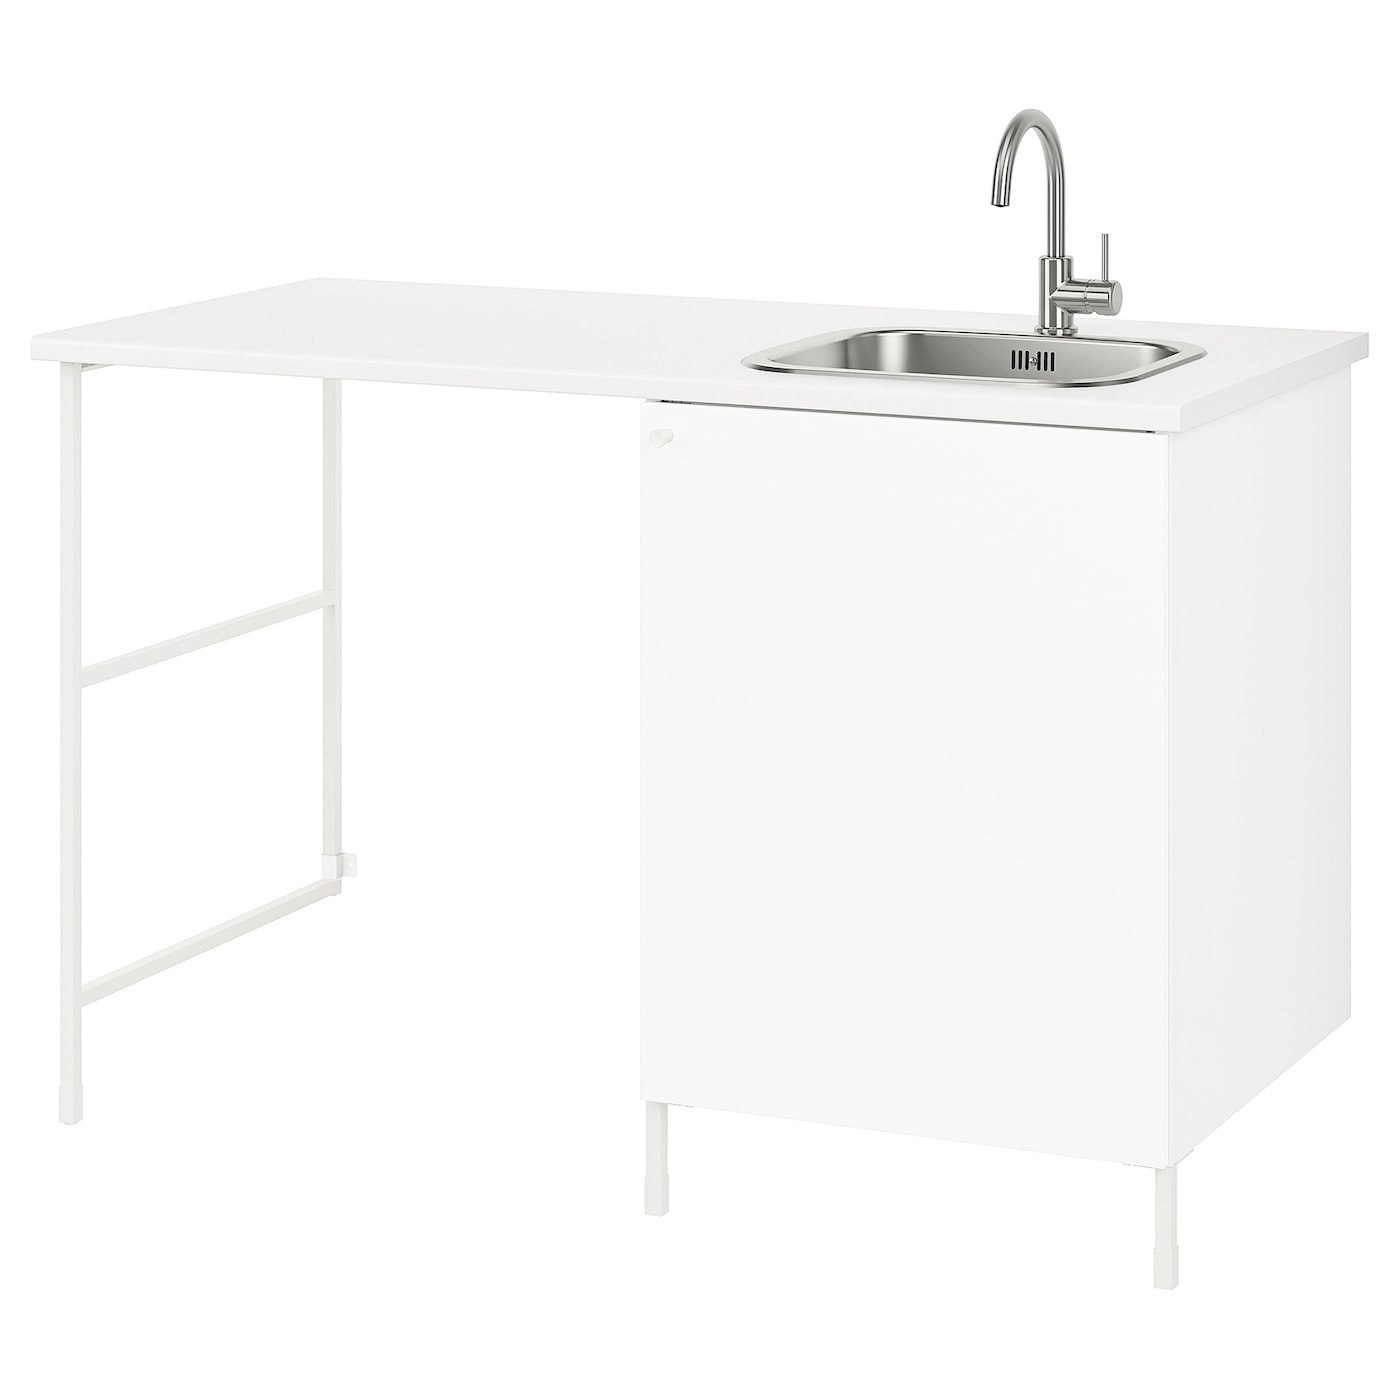 Комбинация шкафов для прачечной и кухни - ENHET  IKEA/ ЭНХЕТ ИКЕА, 139x63,5x87,5 см, белый